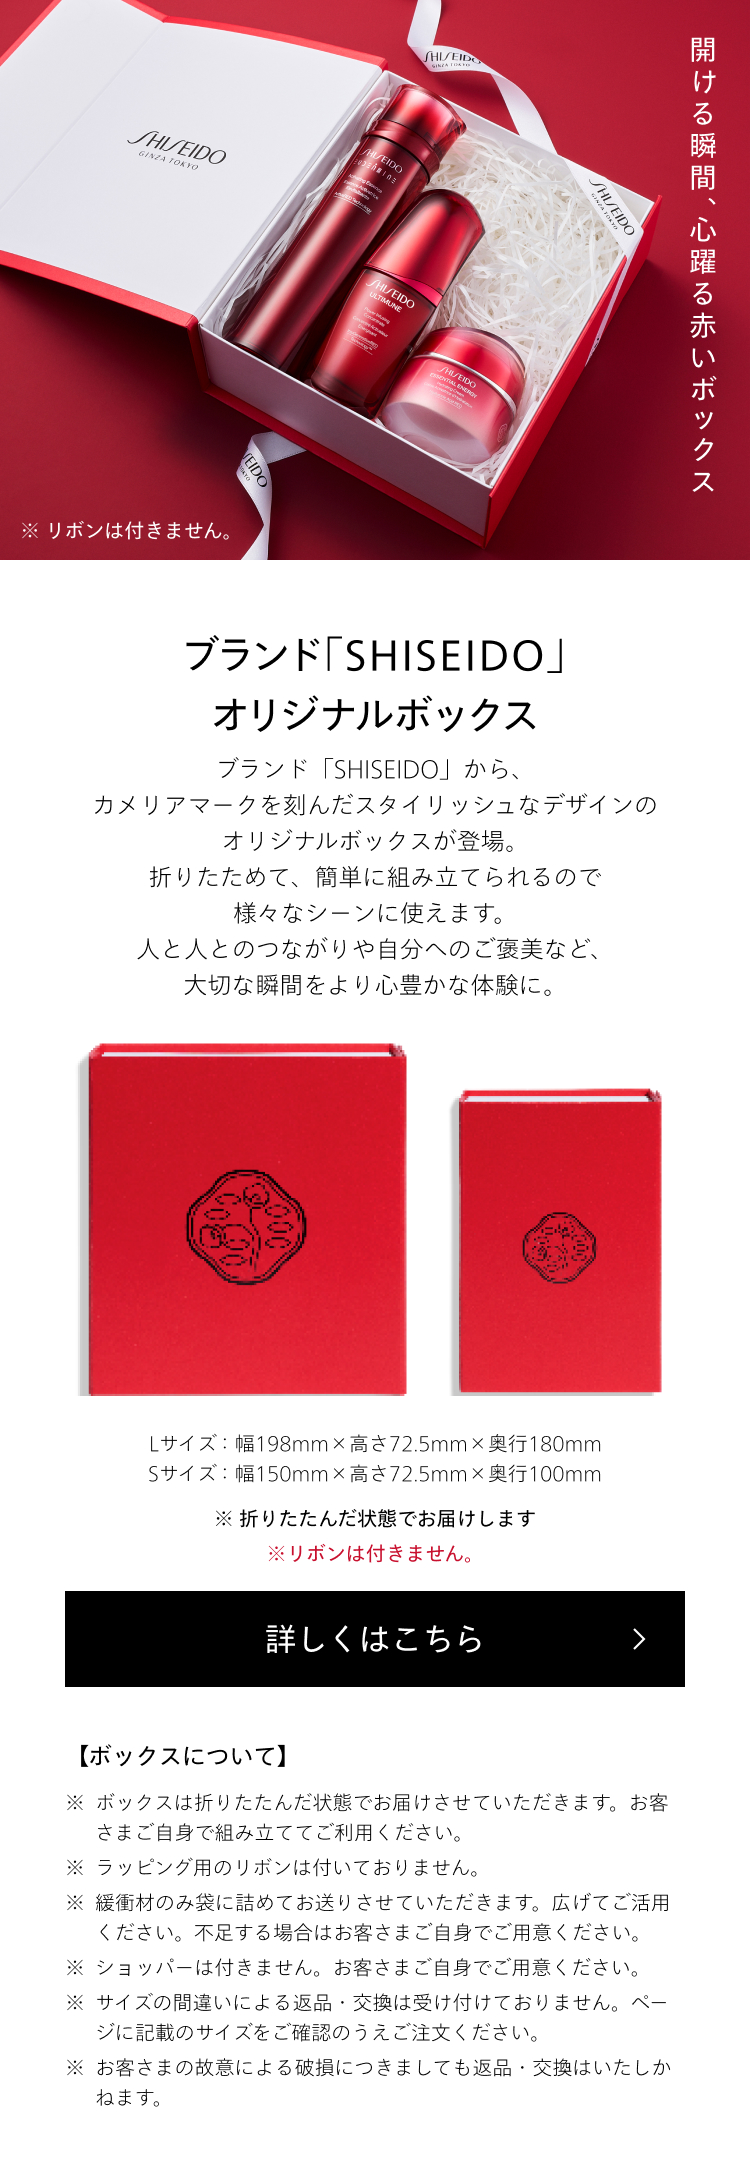 ブランド「SHISEIDO」オリジナルボックス